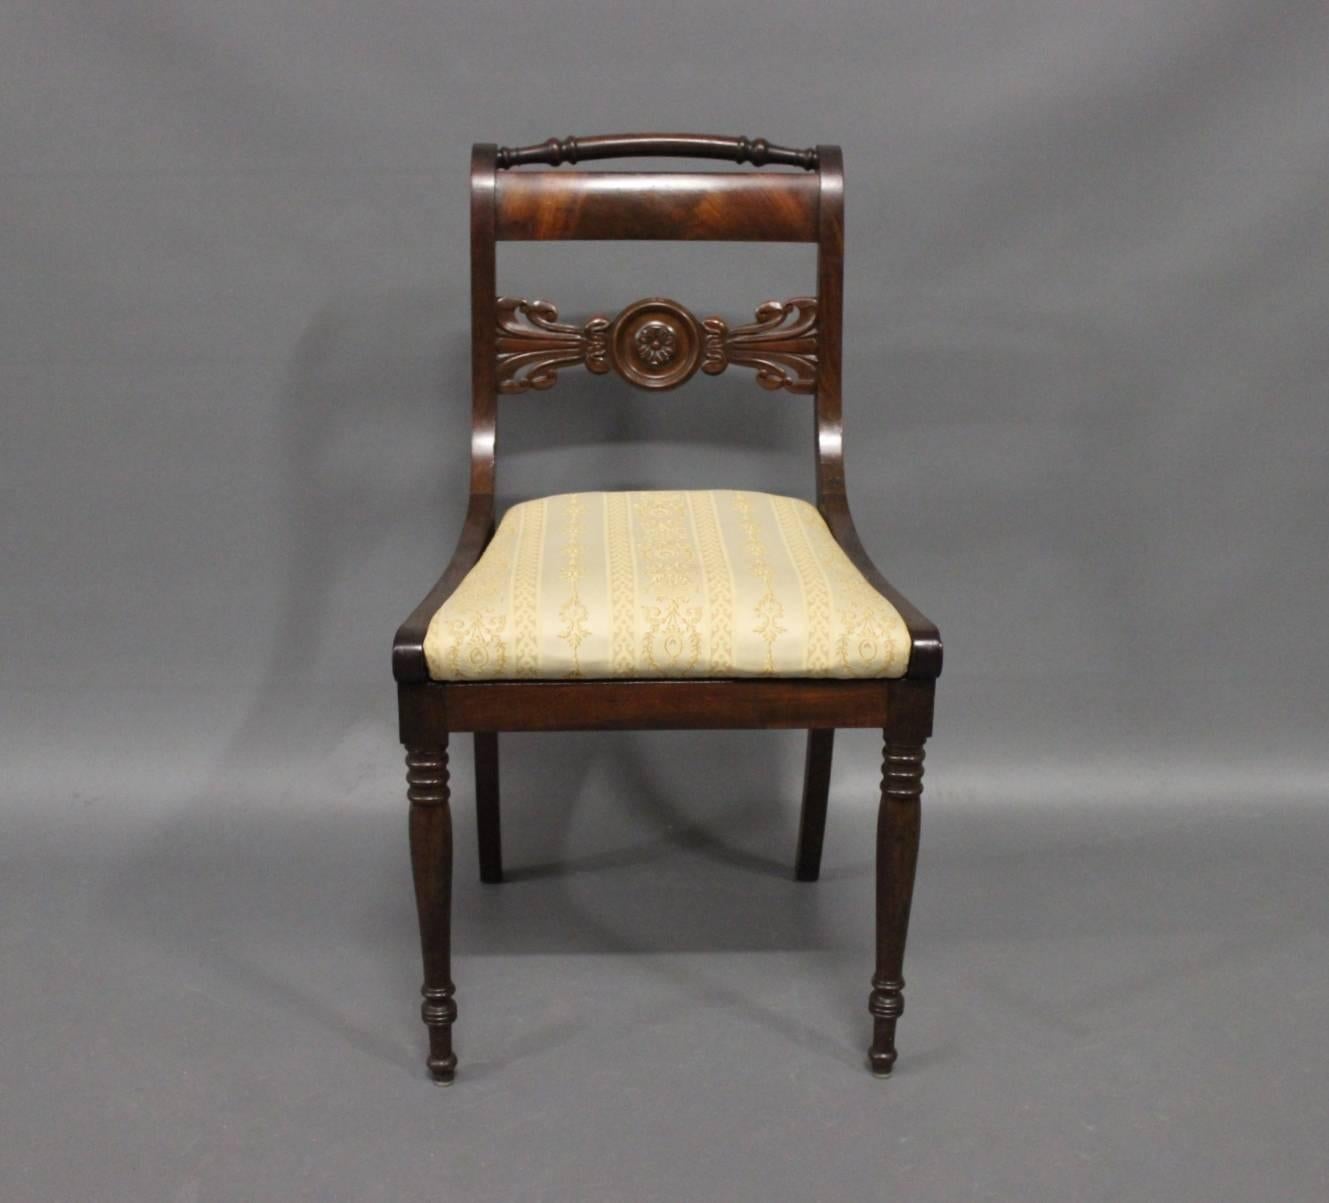 1840s furniture